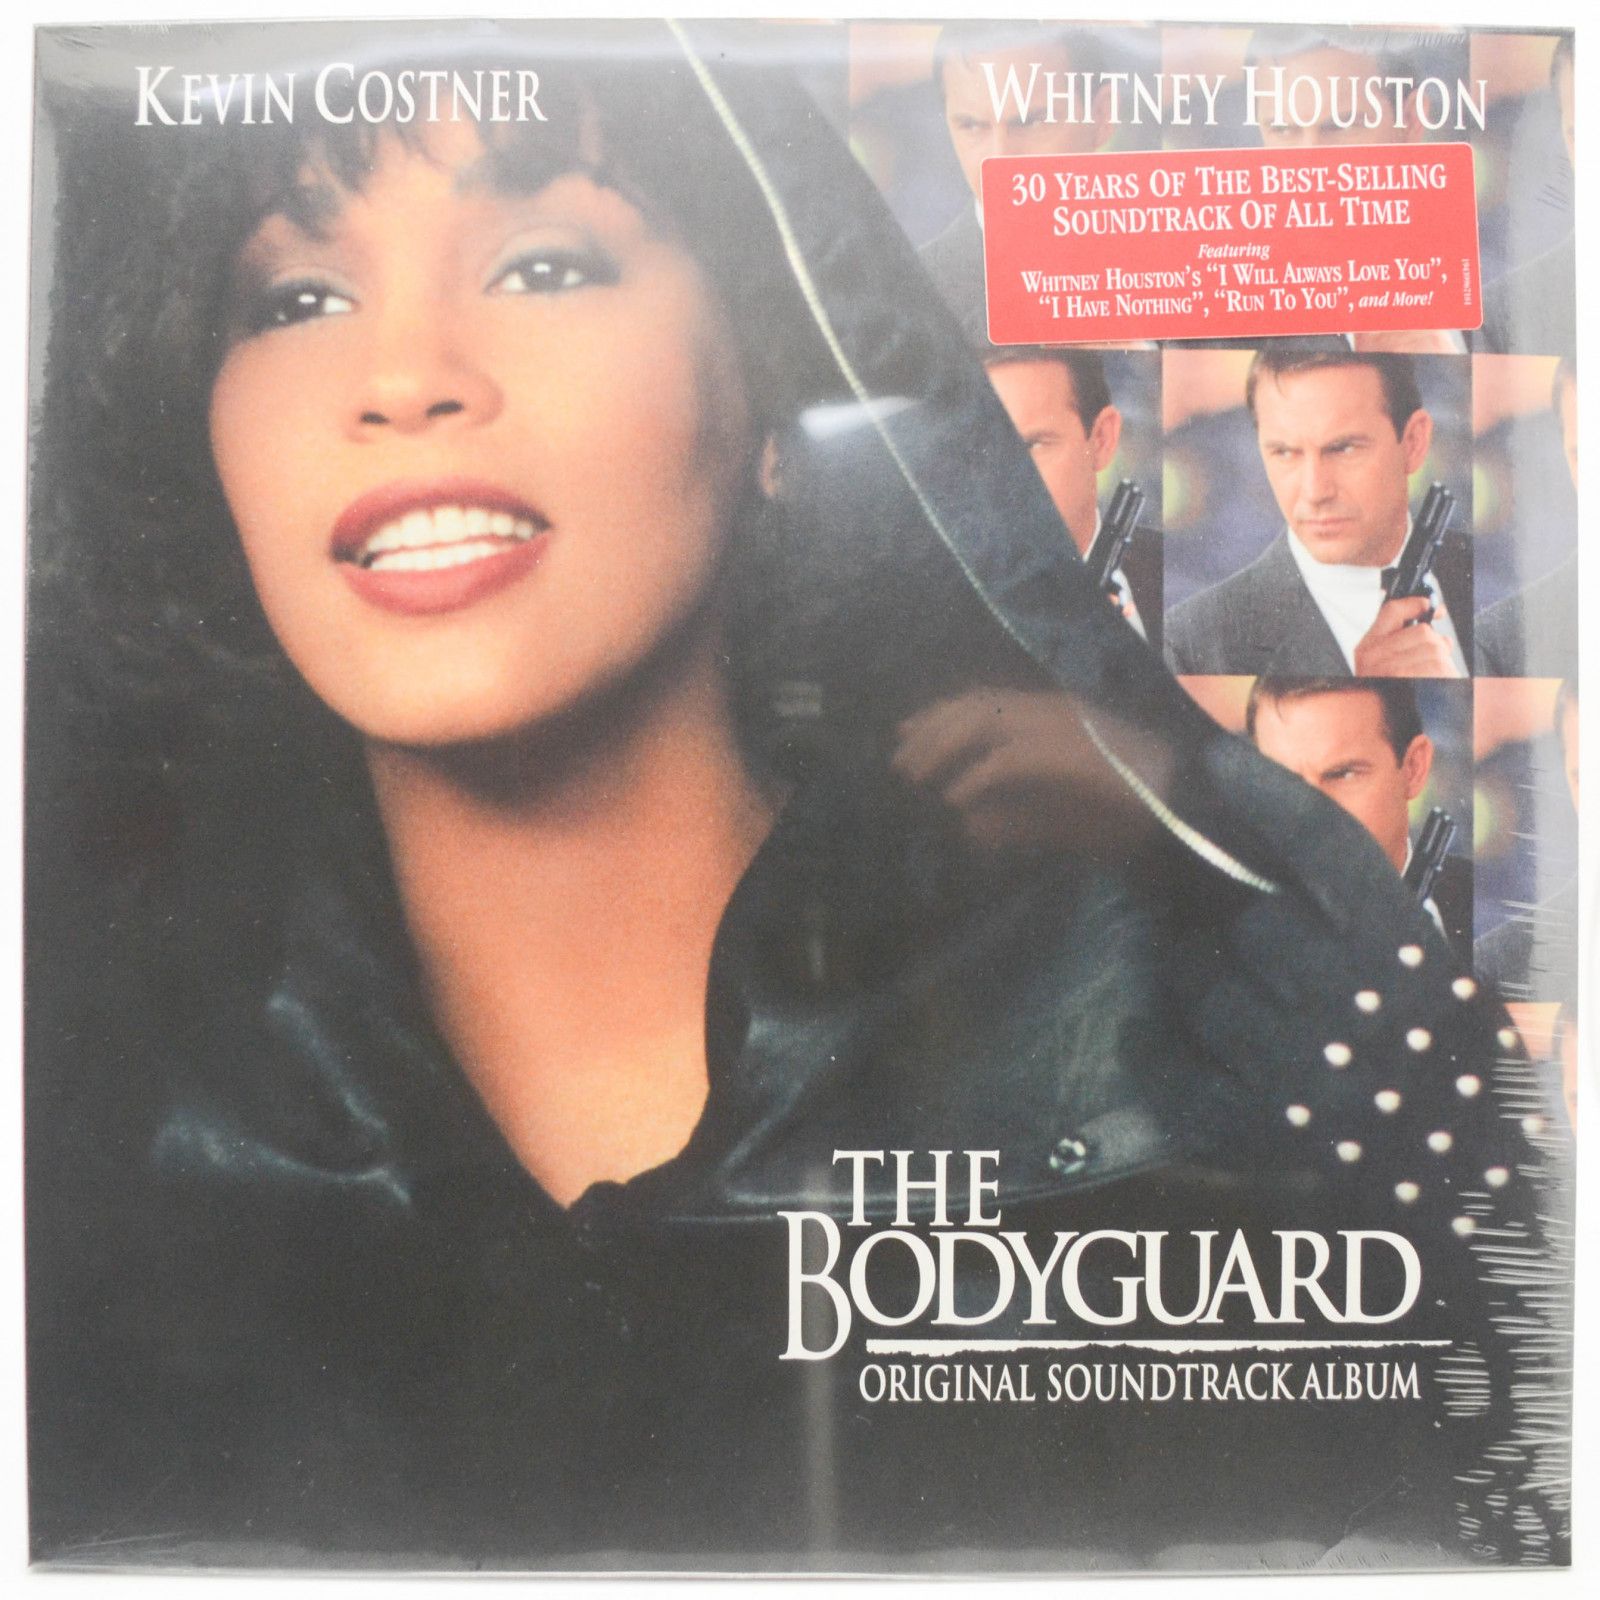 Various — The Bodyguard (Original Soundtrack Album), 1992